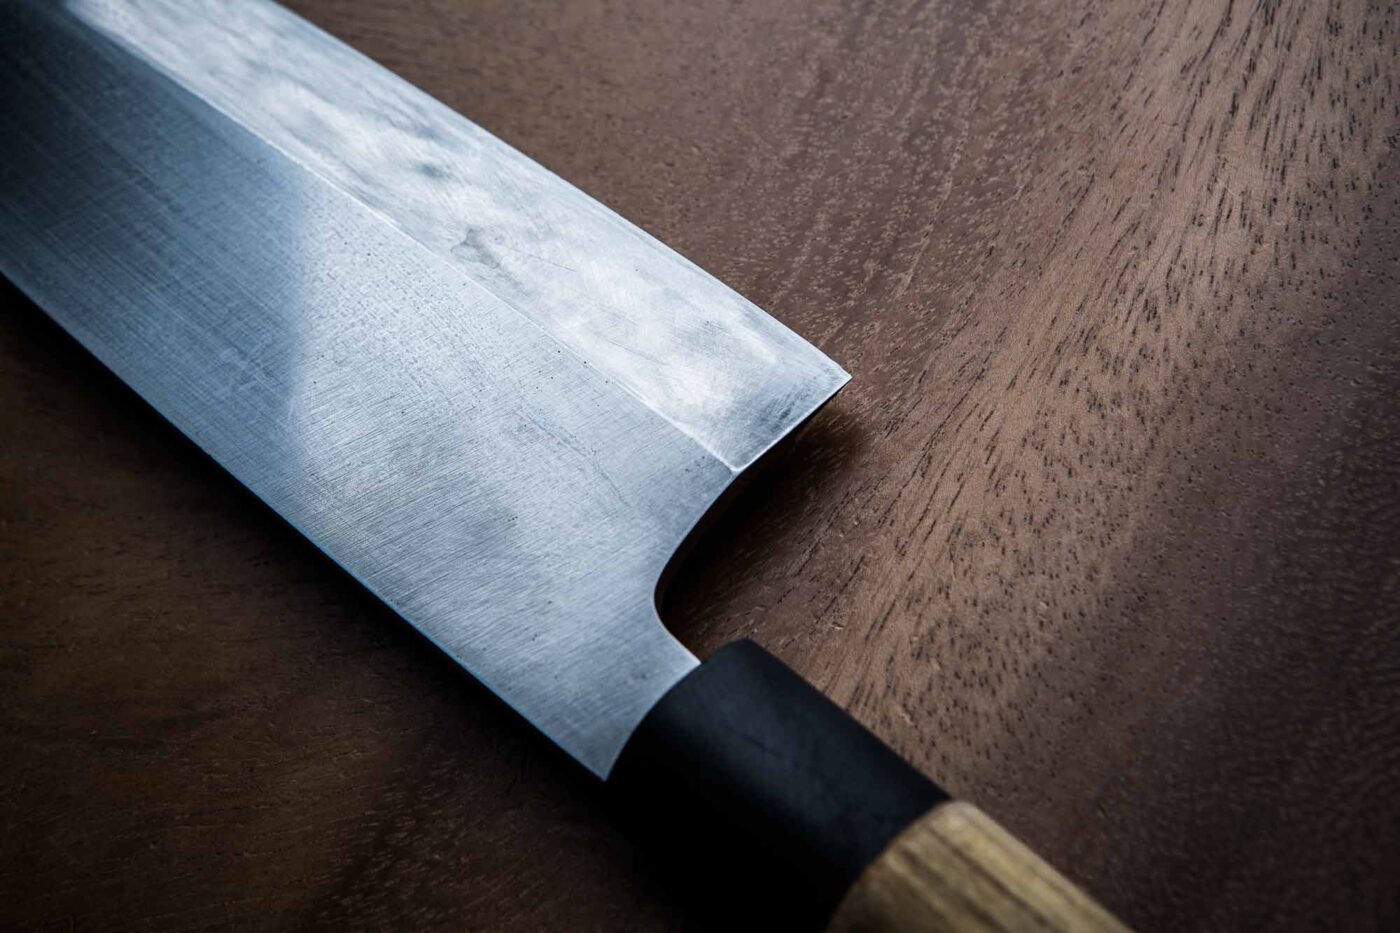 Cuchillos Japoneses Artesanales - Para Chef Profesionales - Casa Lama